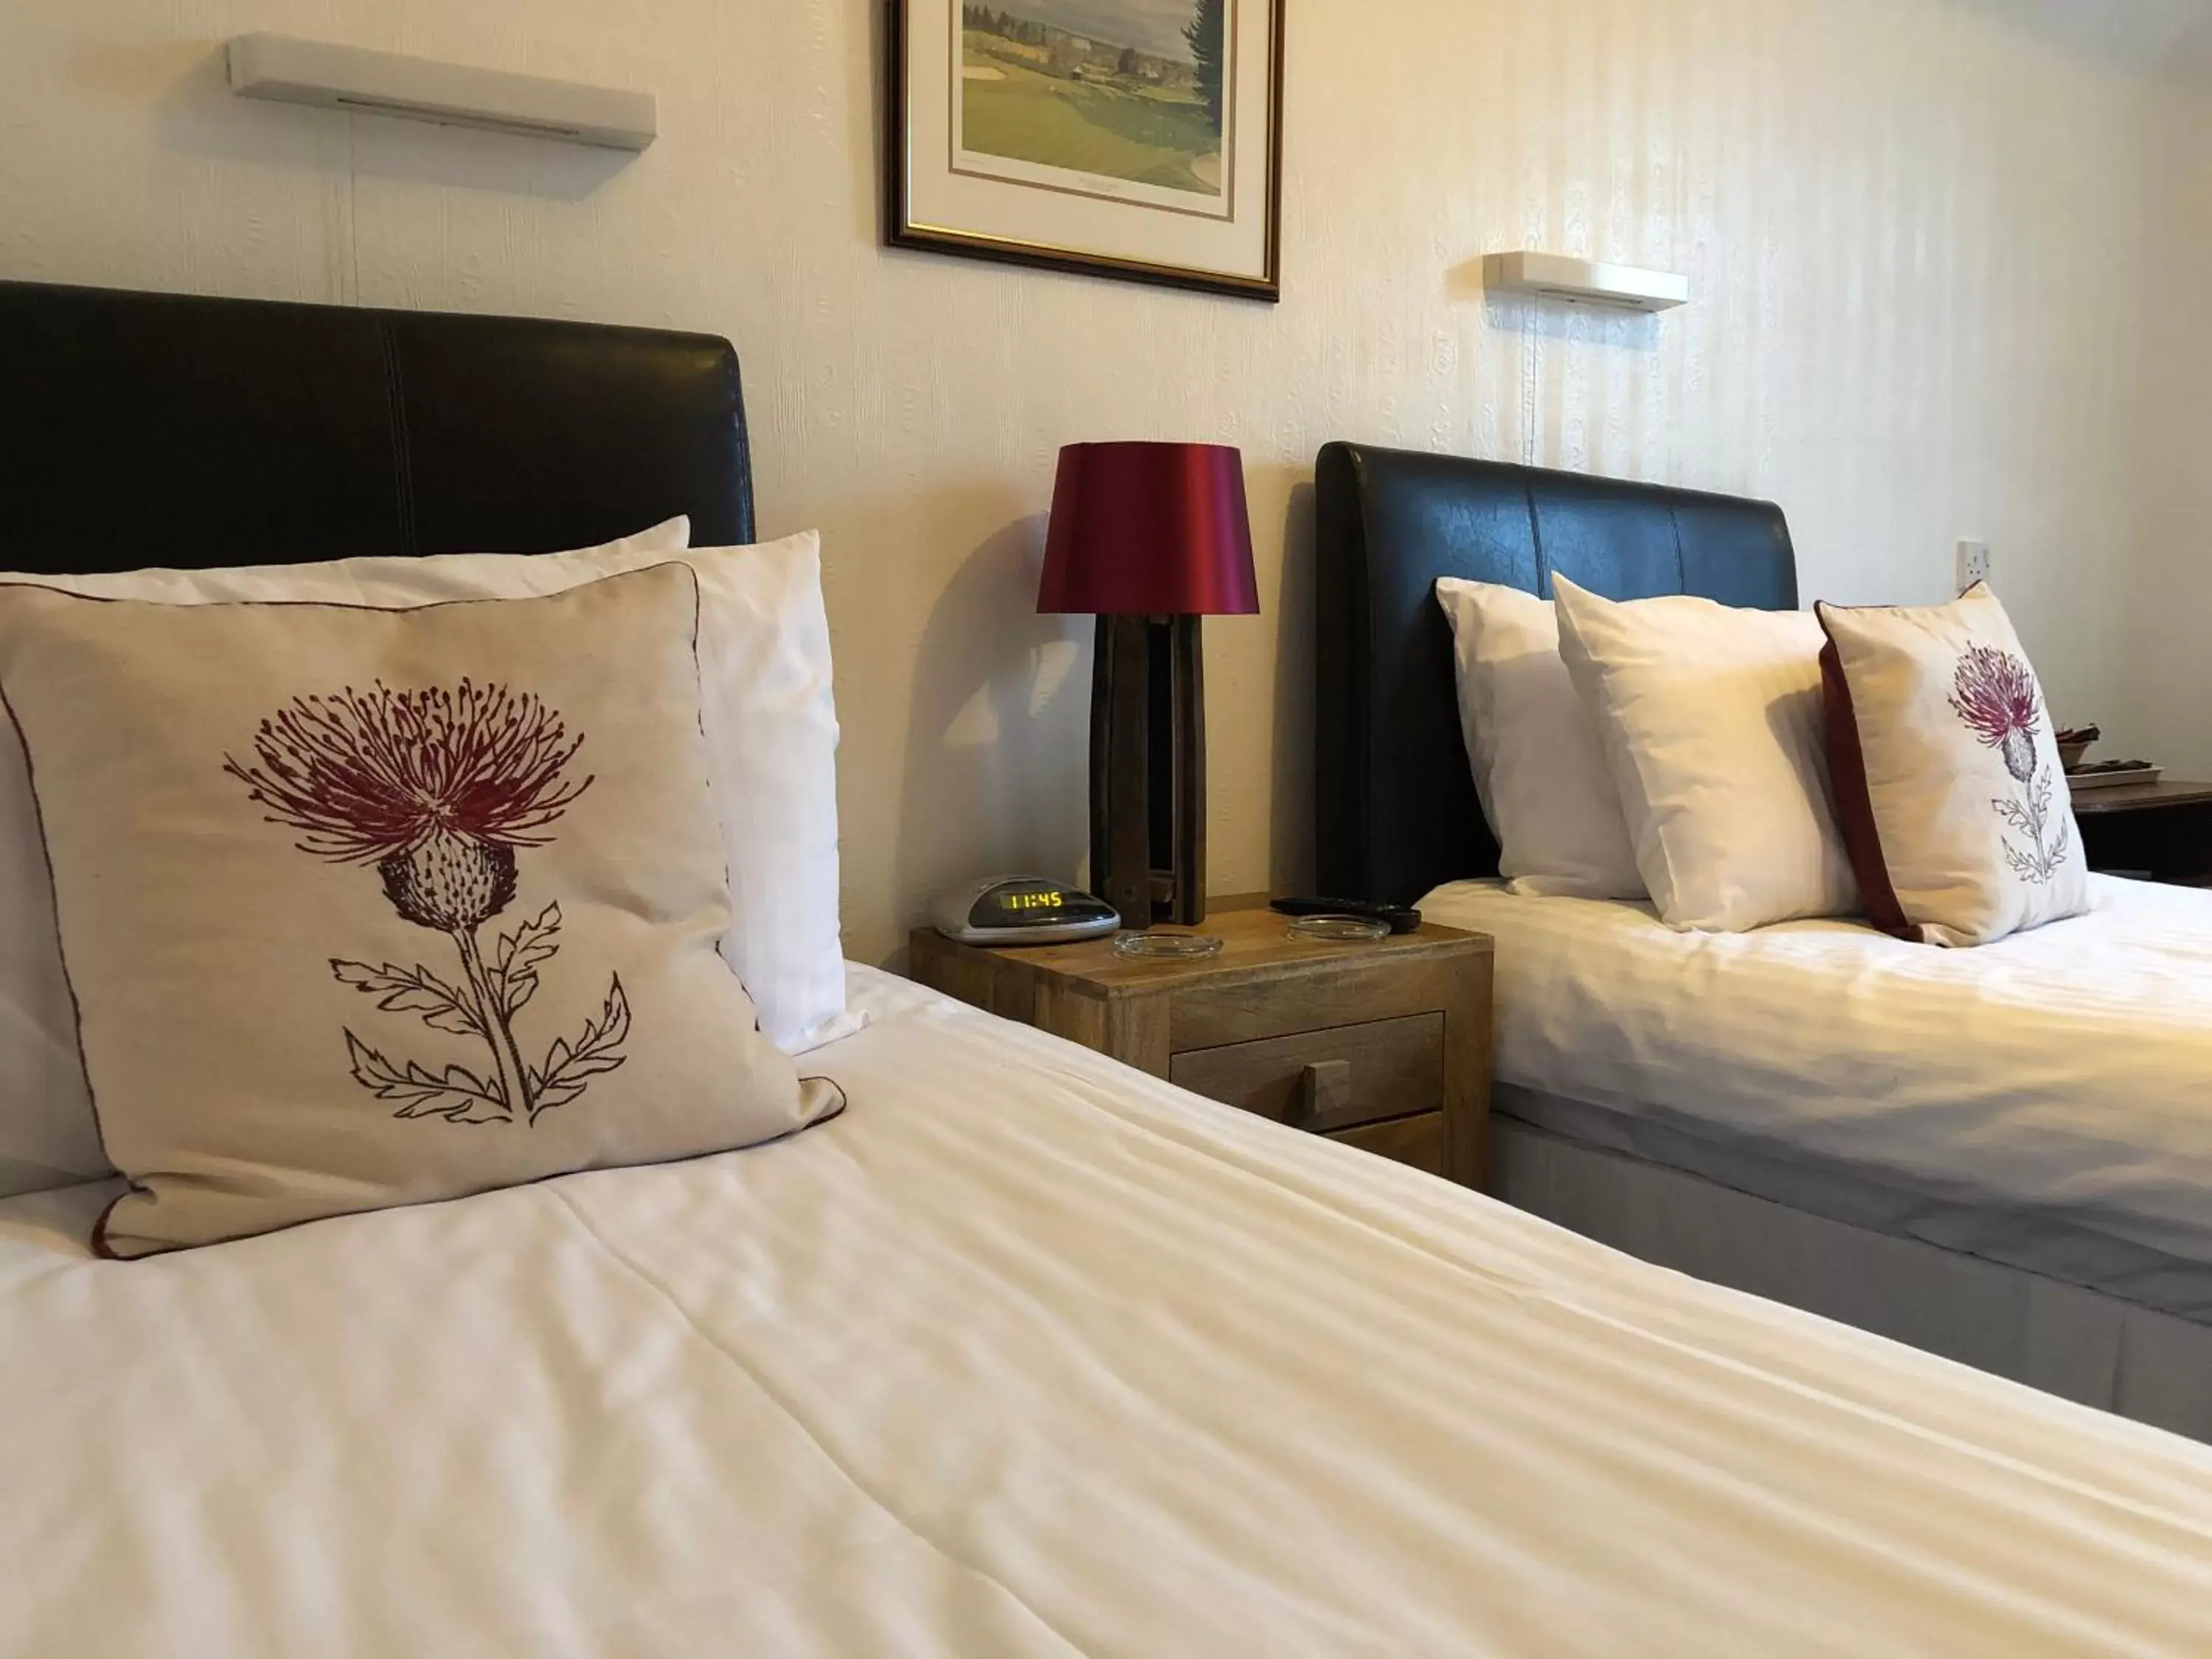 Bed in Westerlea Hotel Nairn